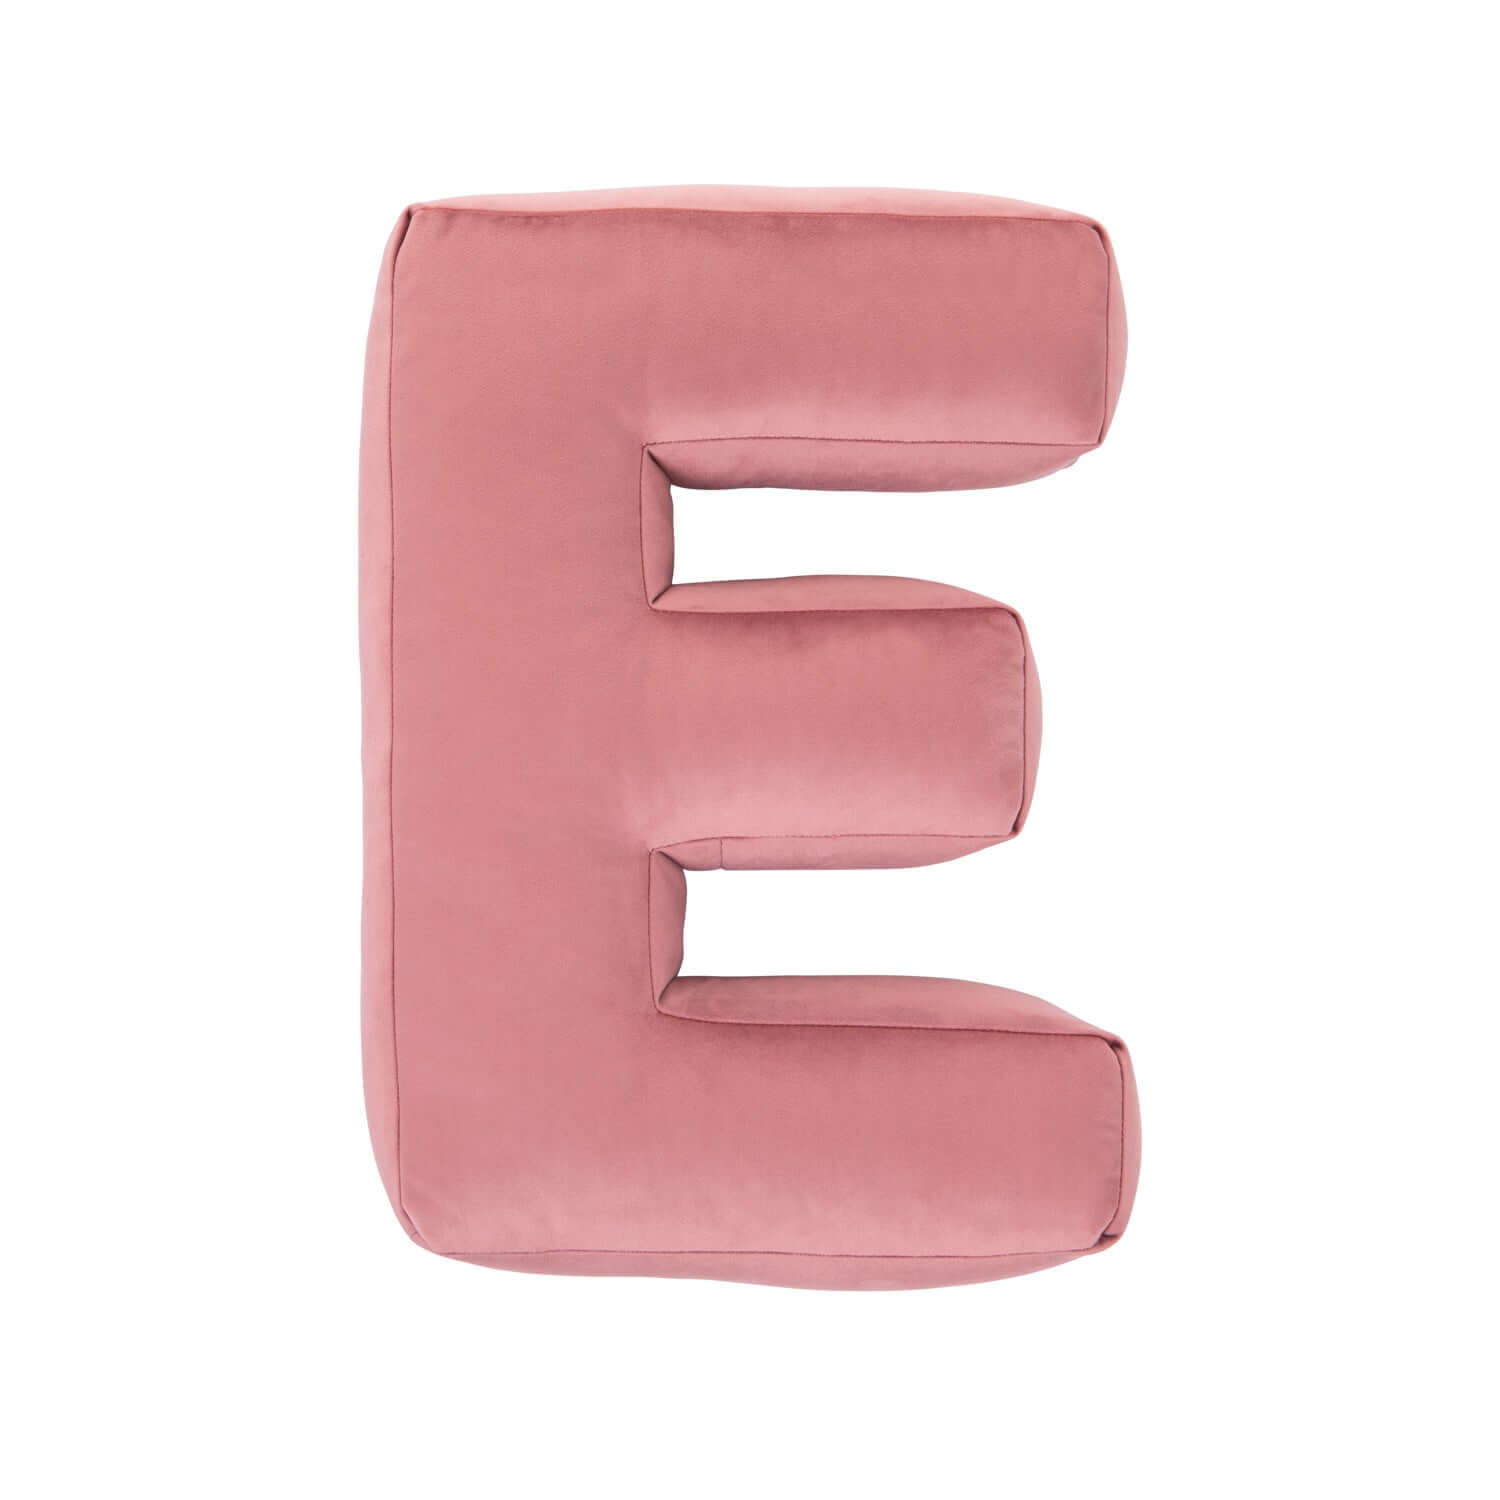 velvet letter pillow e in pink old rose by bettys home